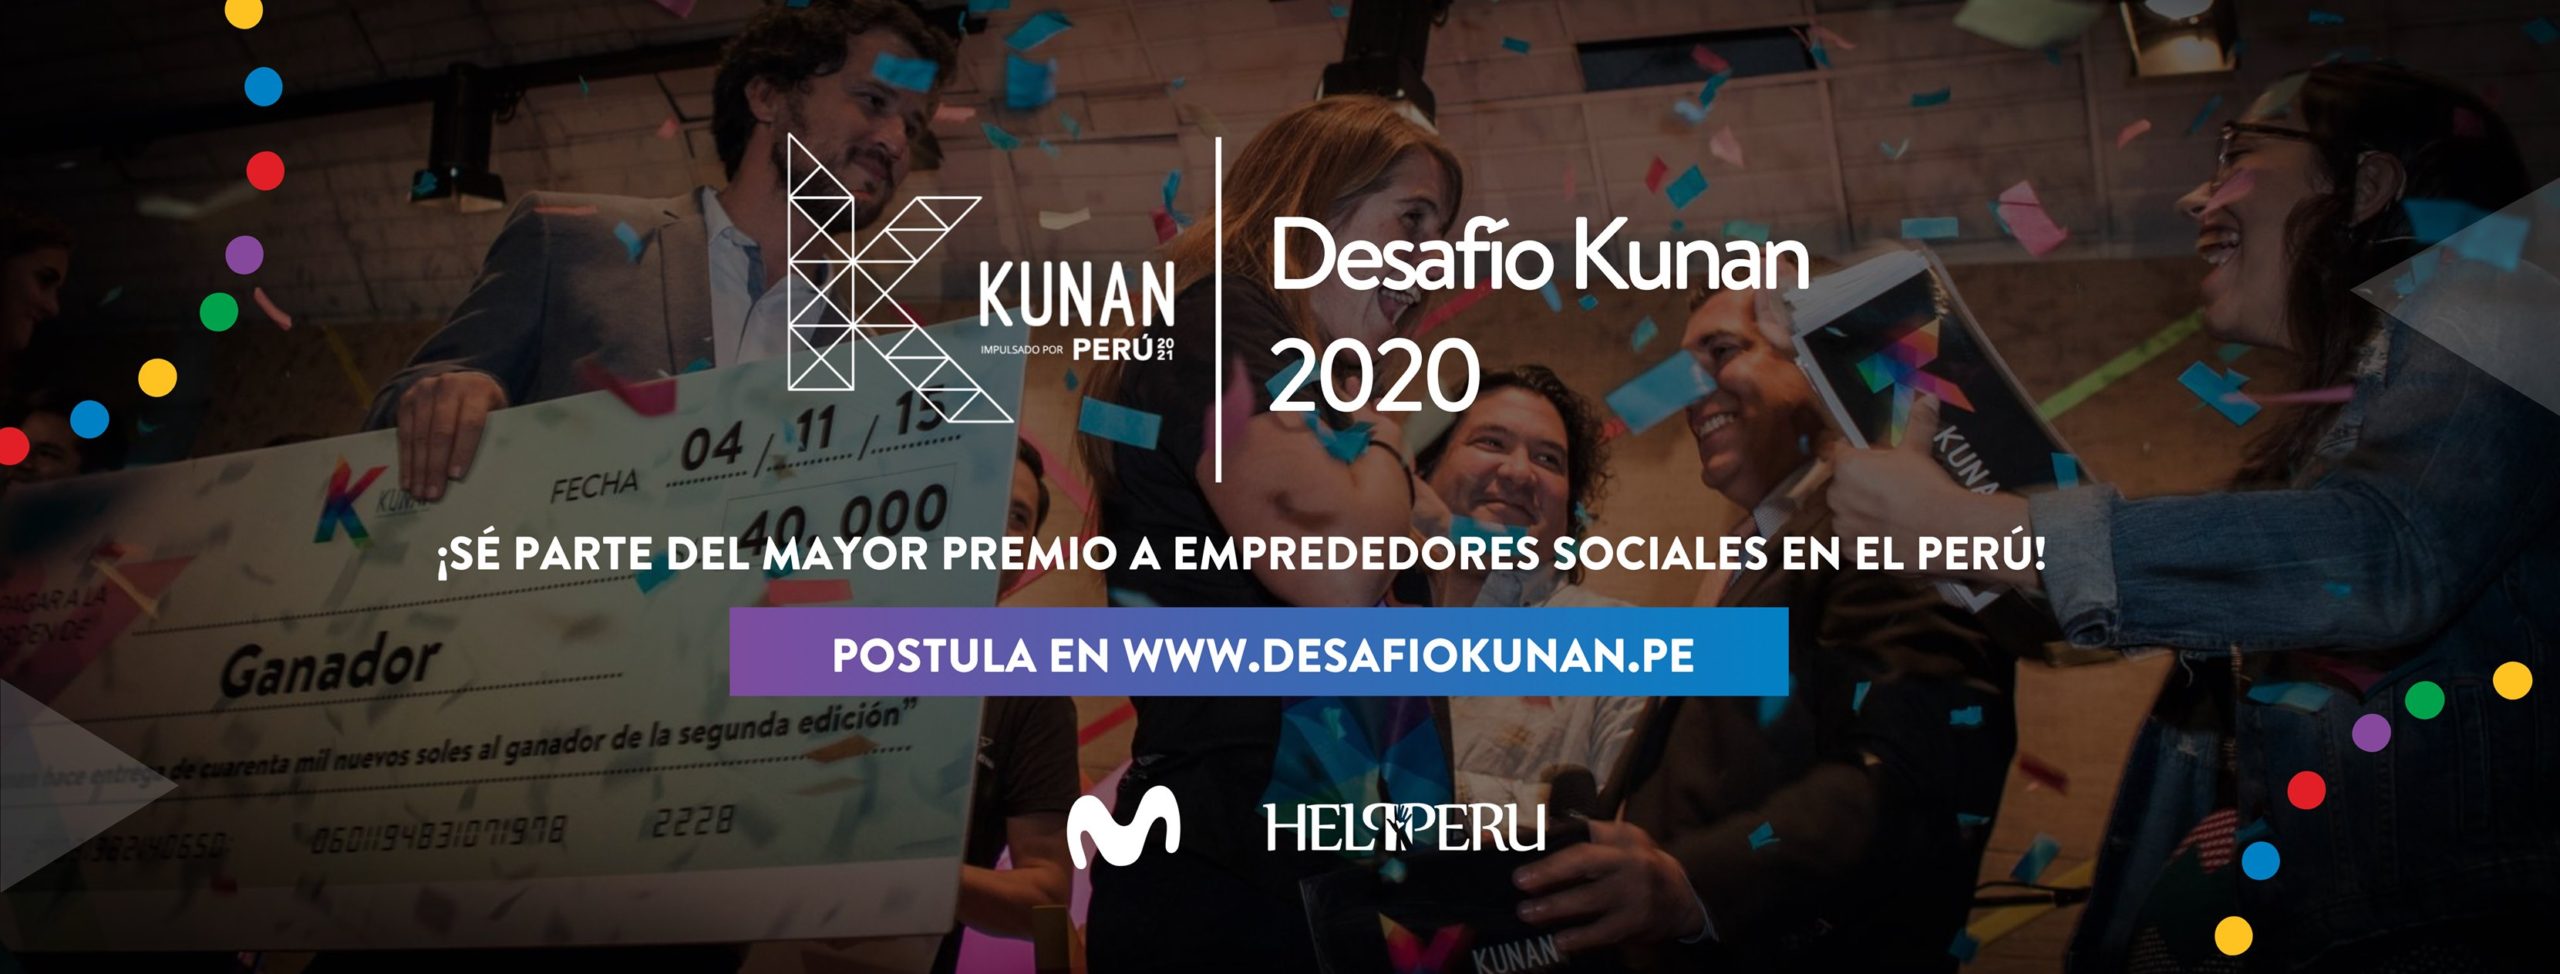 Desafío Kunan 2020